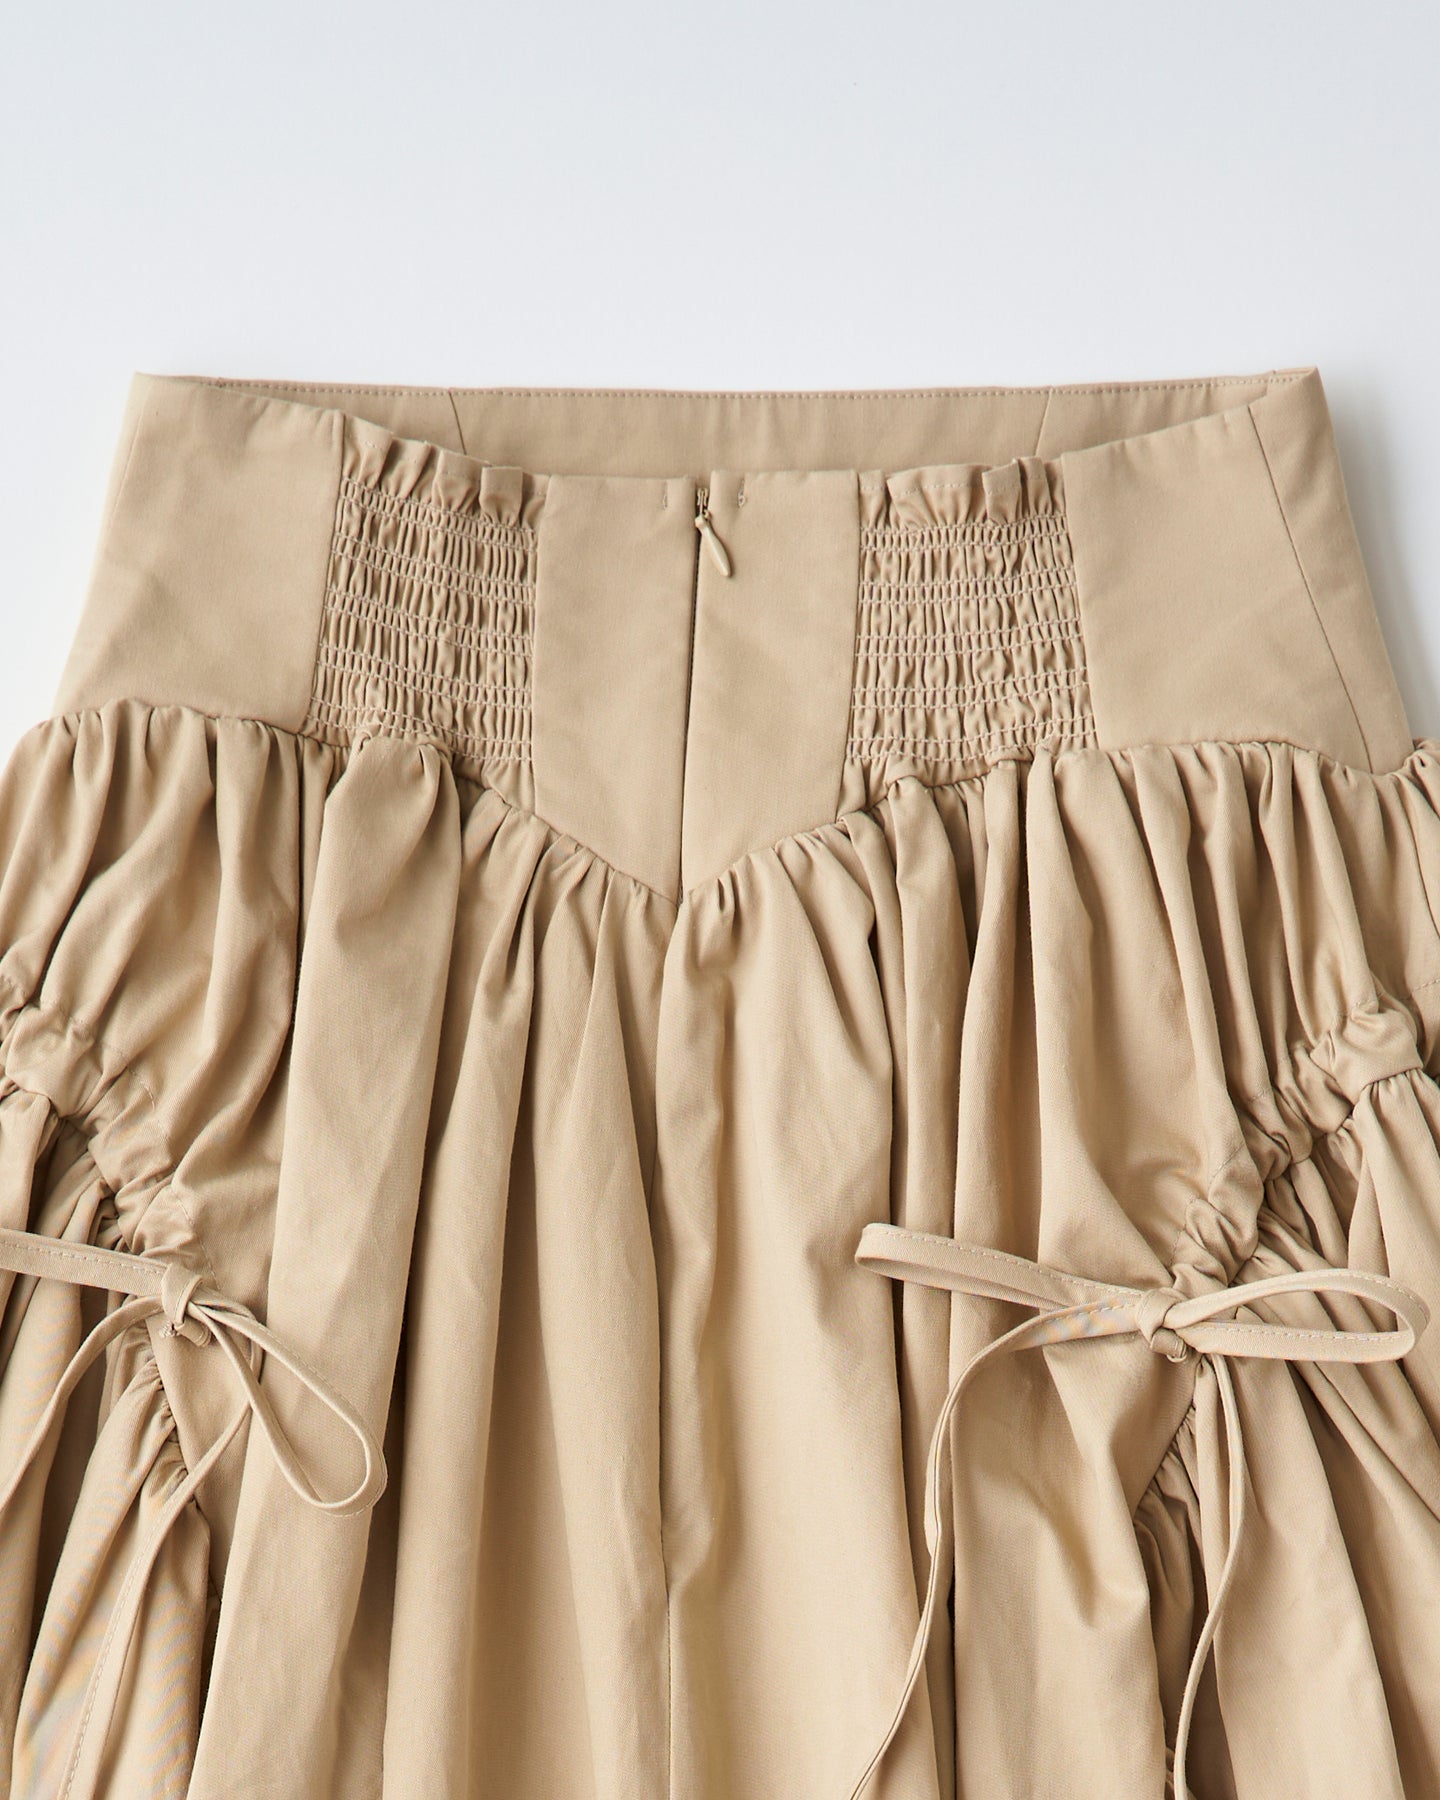 corset volume skirt（beige）